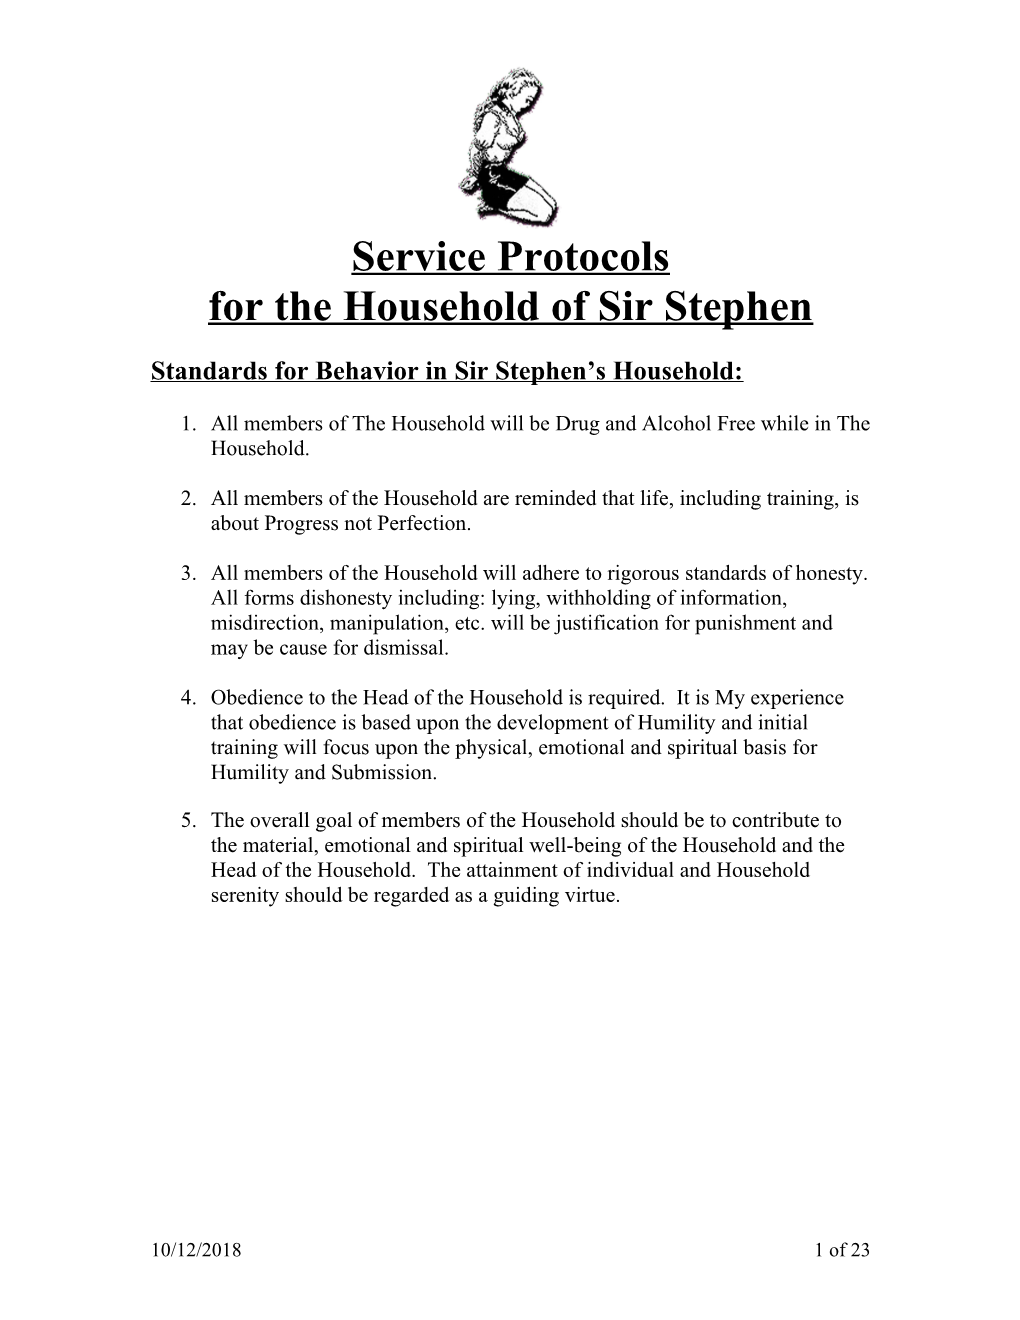 Standards for Behavior in Sir Stephen S Household